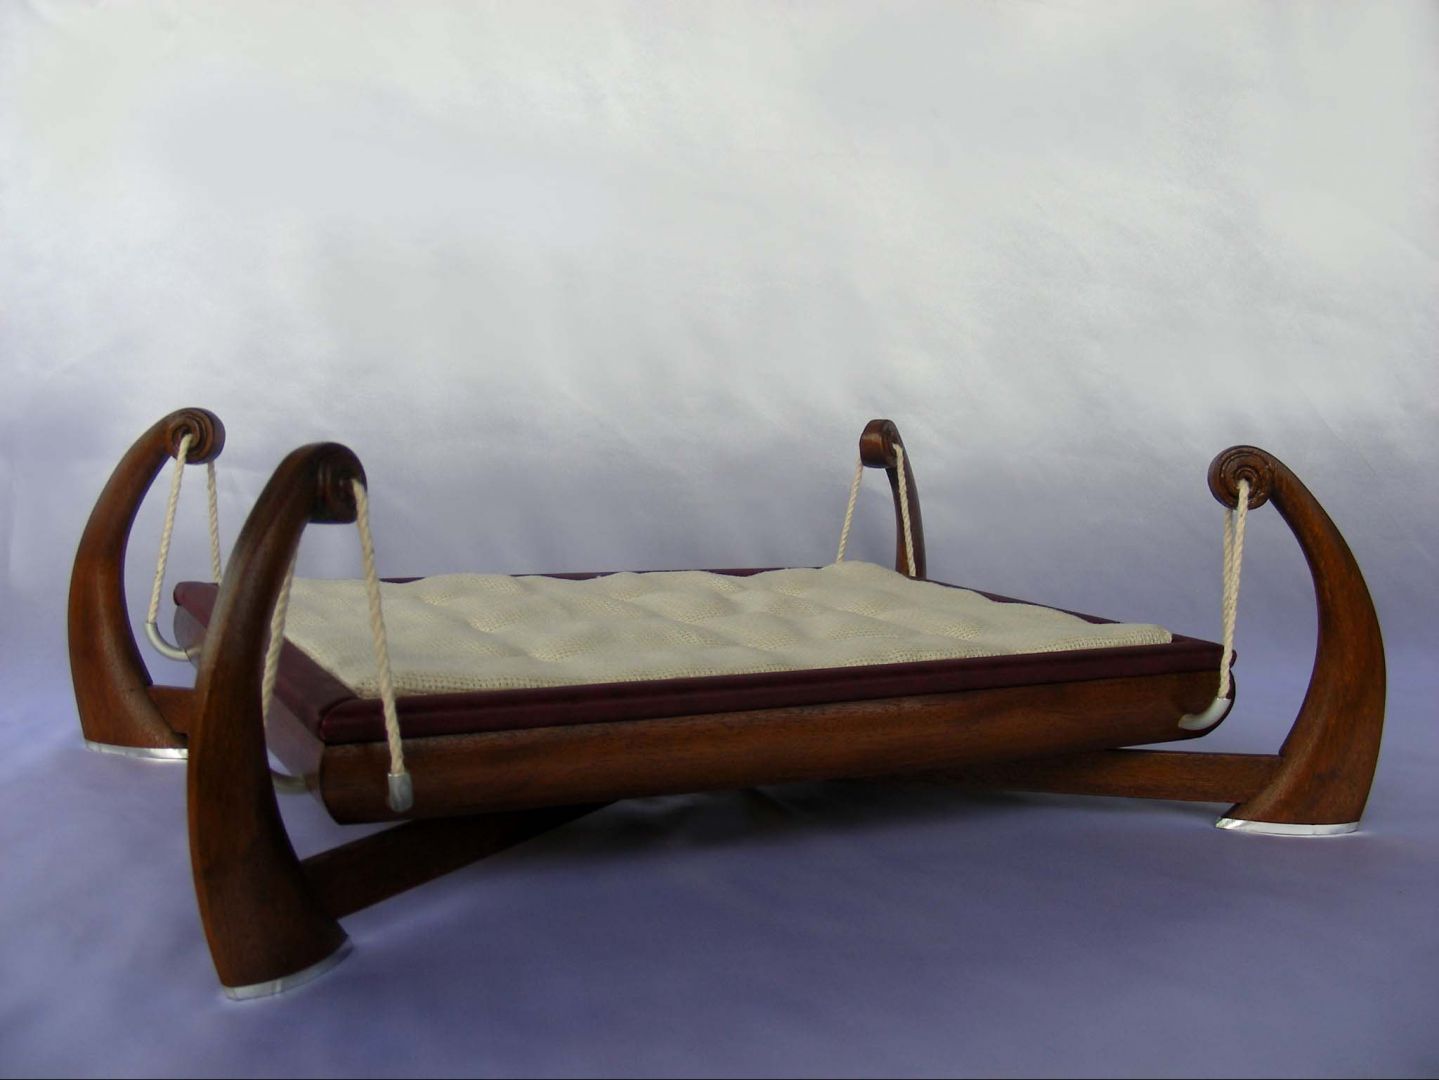 Łóżko ozdoba - drewniany mebel, wiszący na linach i drewnianych podstawach. Projekt Tomasza Wagnera.
Fot. Archiwum 